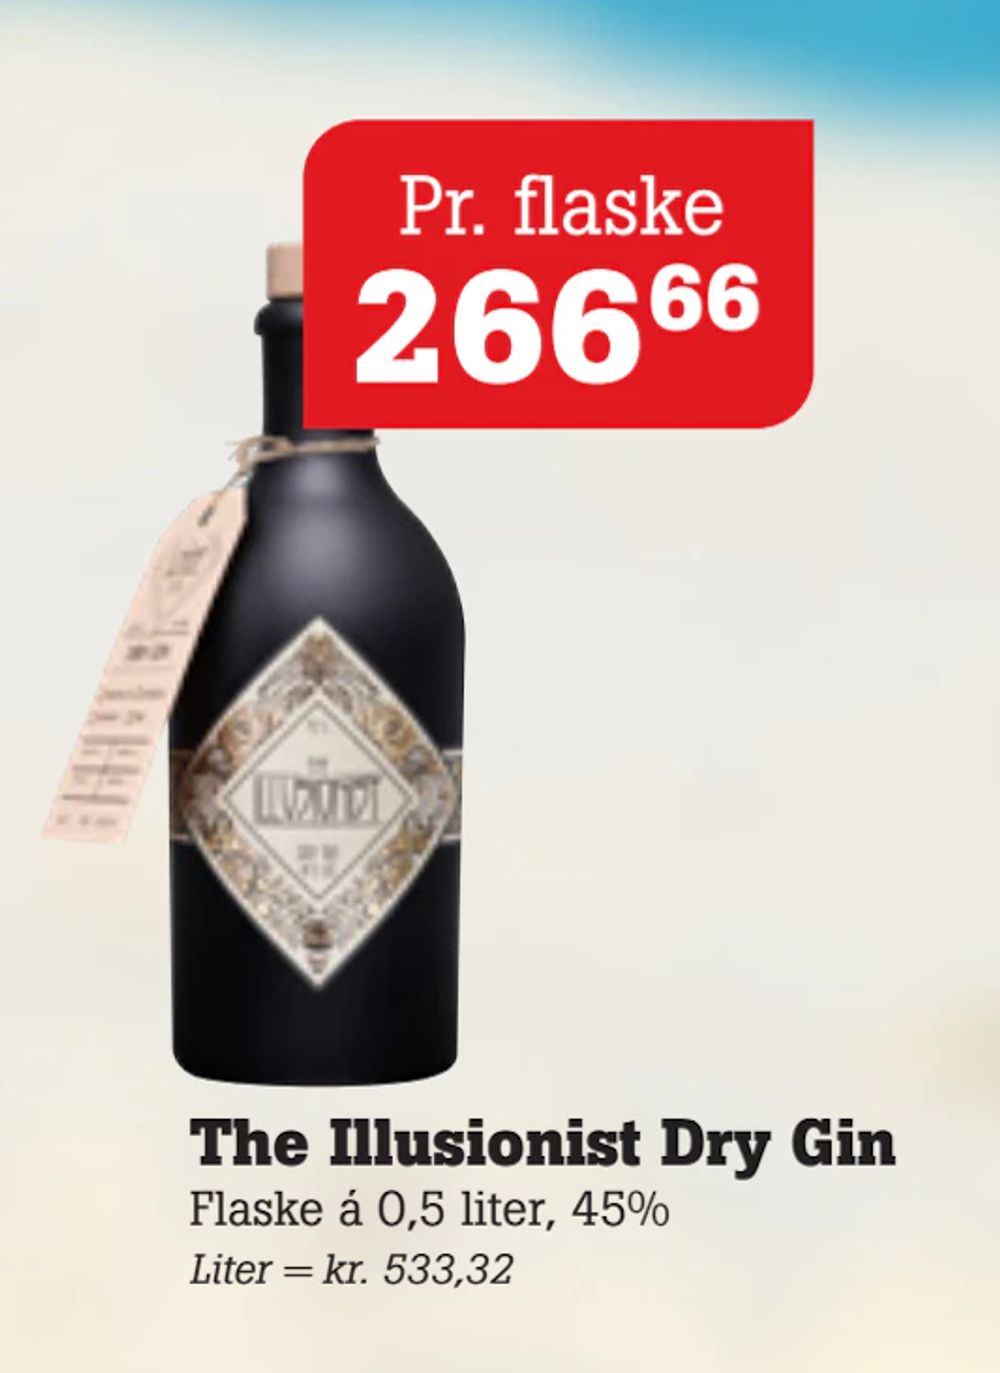 Tilbud på The Illusionist Dry Gin fra Poetzsch Padborg til 266,66 kr.